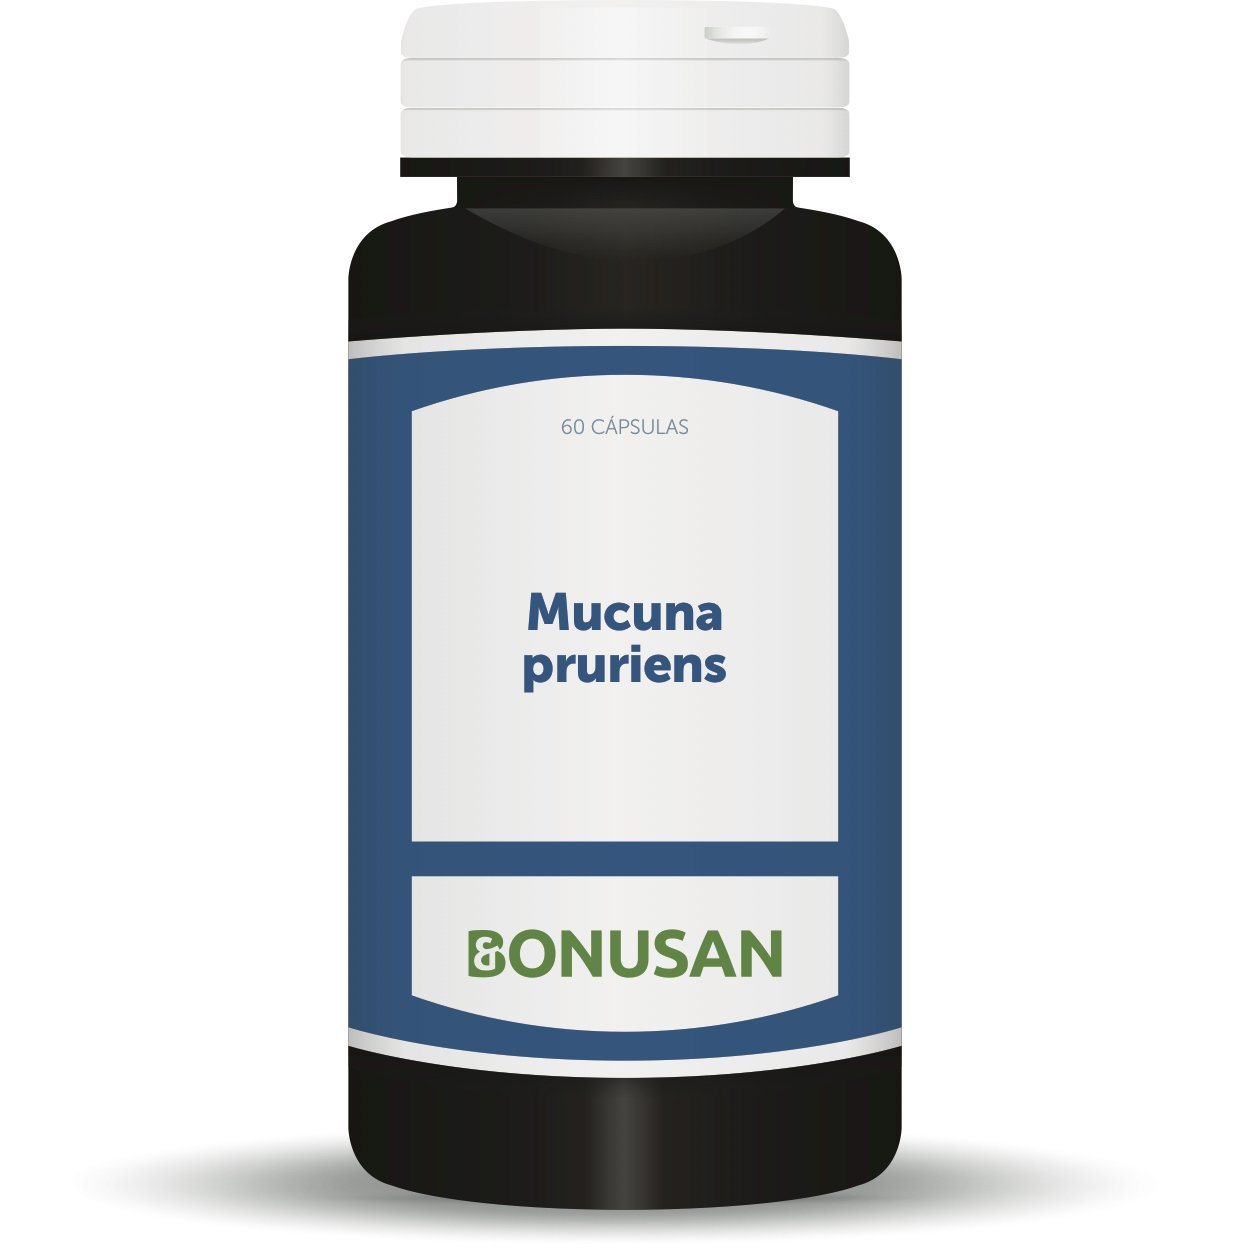 Mucuna Pruriens 60 Capsulas | Bonusan - Dietetica Ferrer